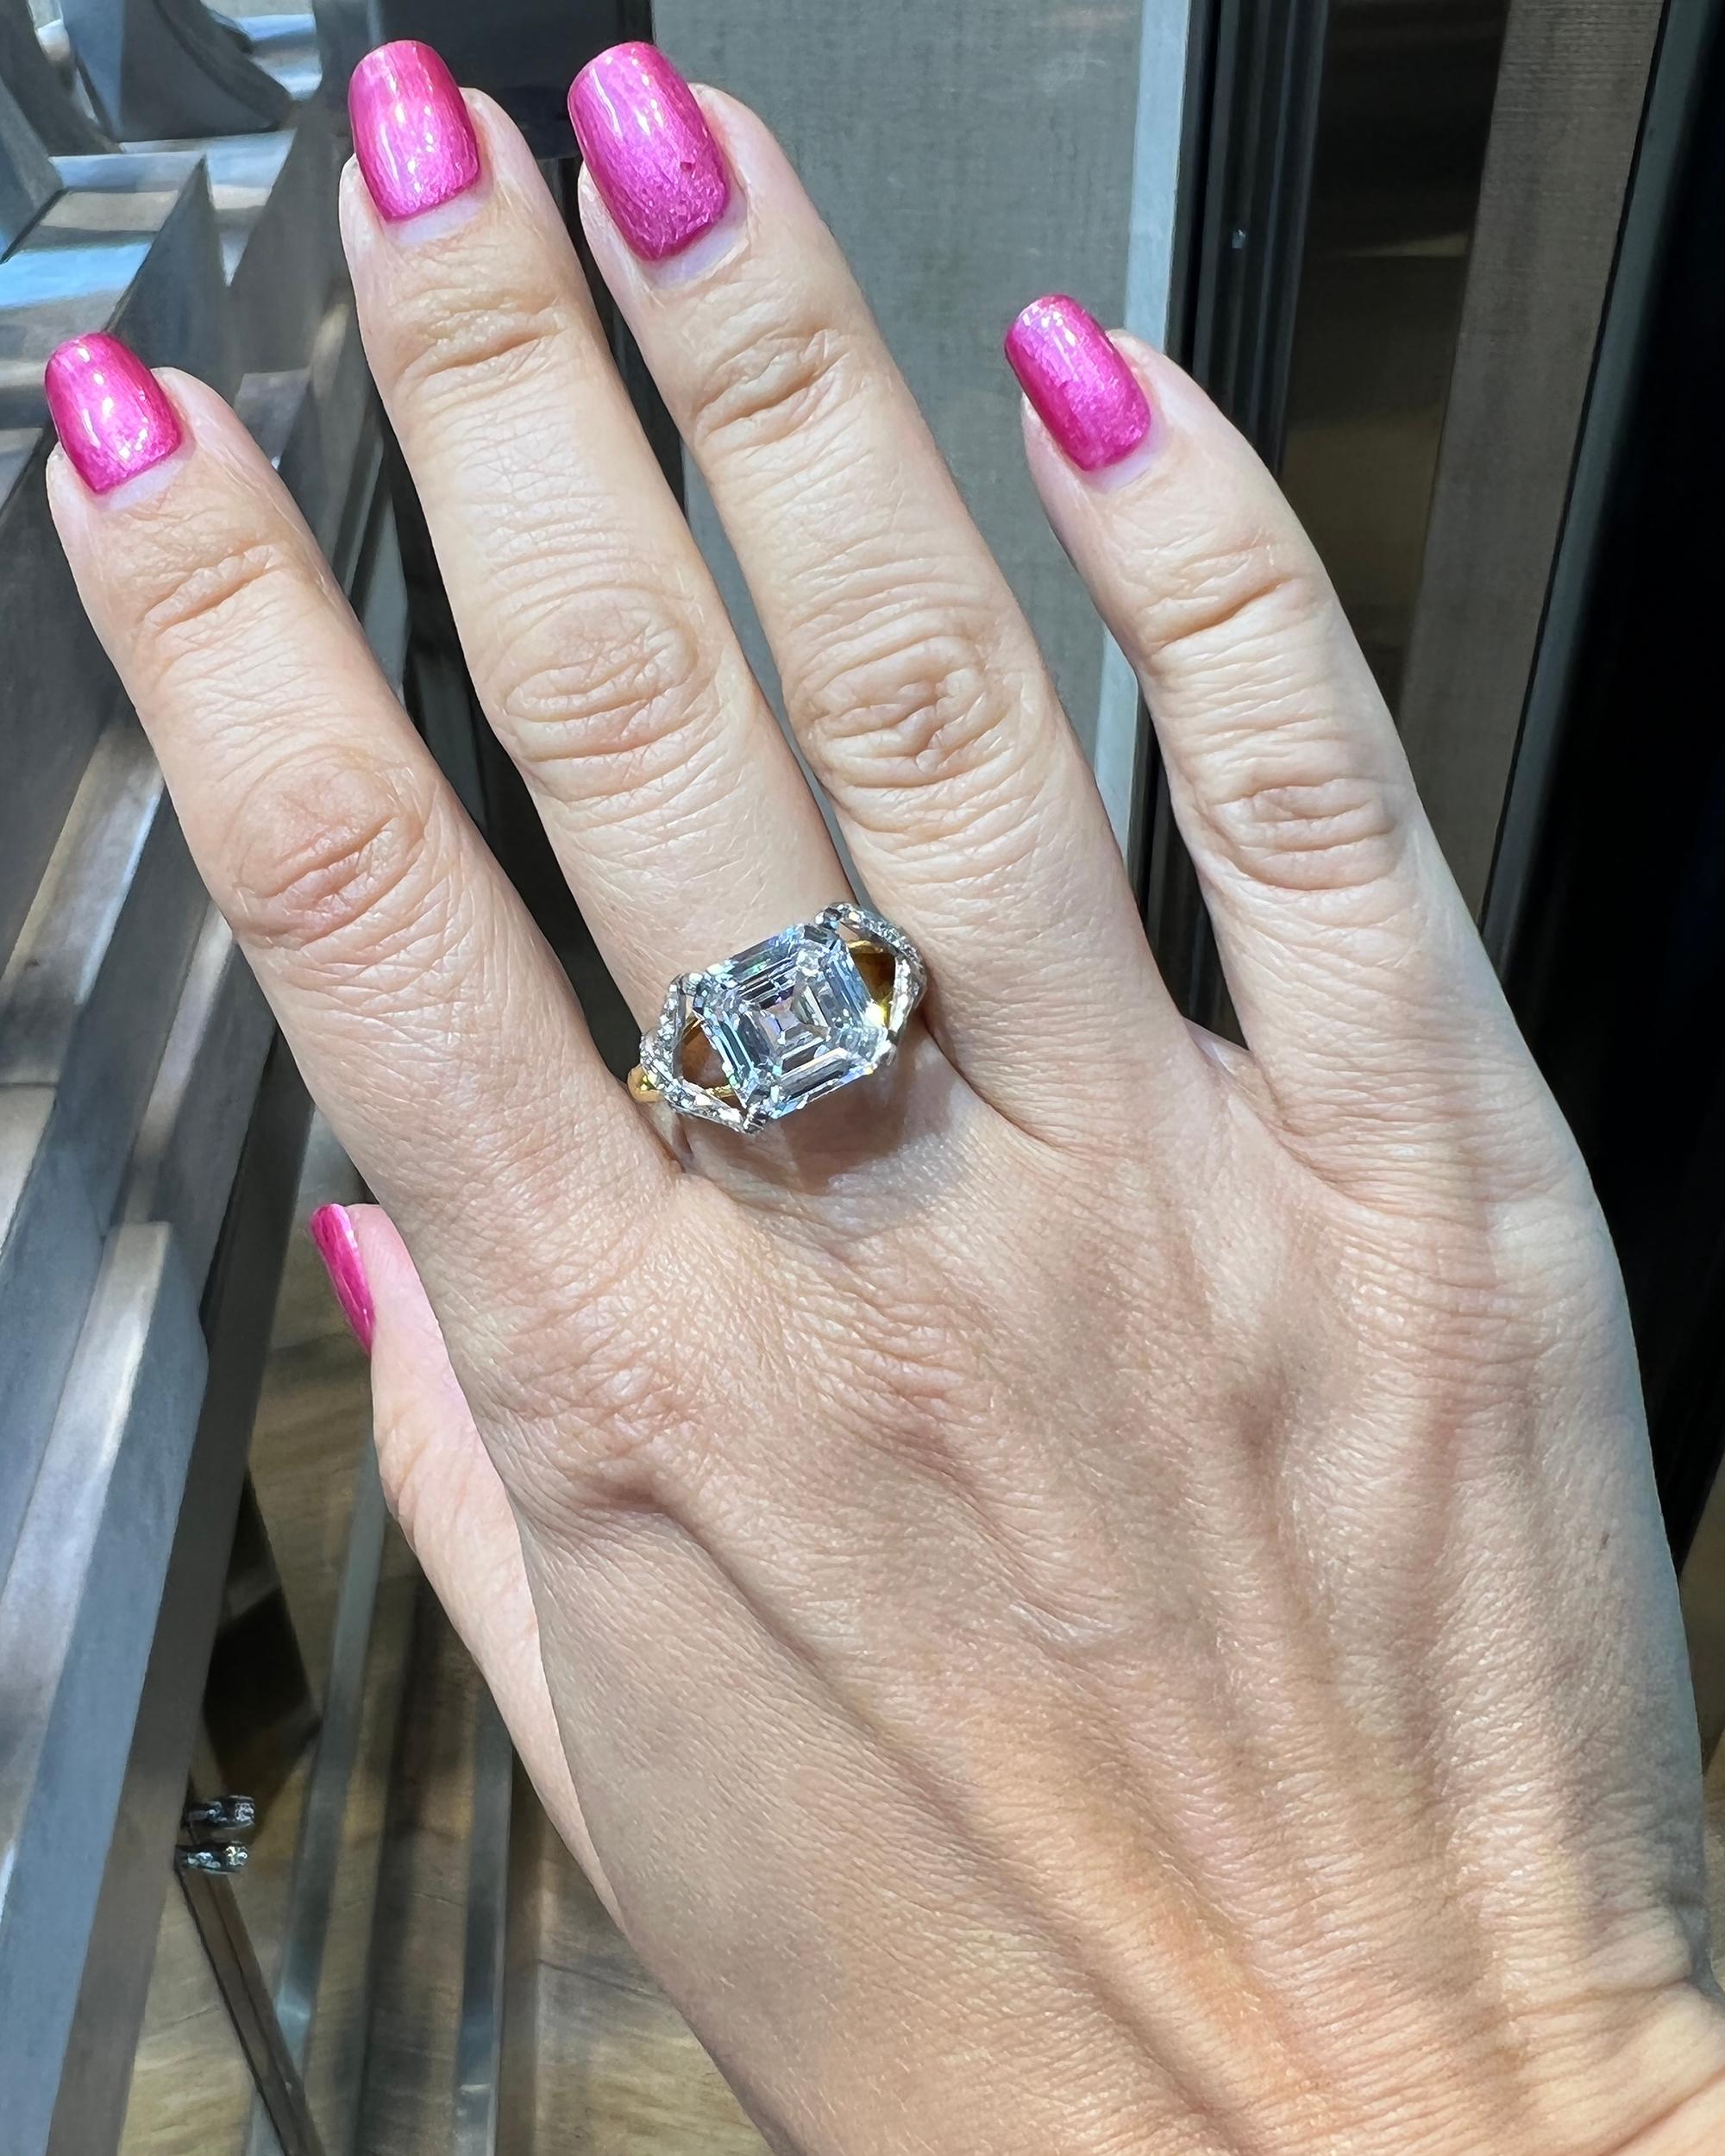 Tiffany & Co. Schlumberger GIA zertifiziert 3,92 Karat E Farbe Diamant-Ring.
Ein atemberaubender Ring, hergestellt von Schlumberger für Tiffany & Co.
Der zentrale Diamant ist ein quadratischer Smaragd-Schliff, Farbe E, Reinheit SI1.
Der Diamant wird